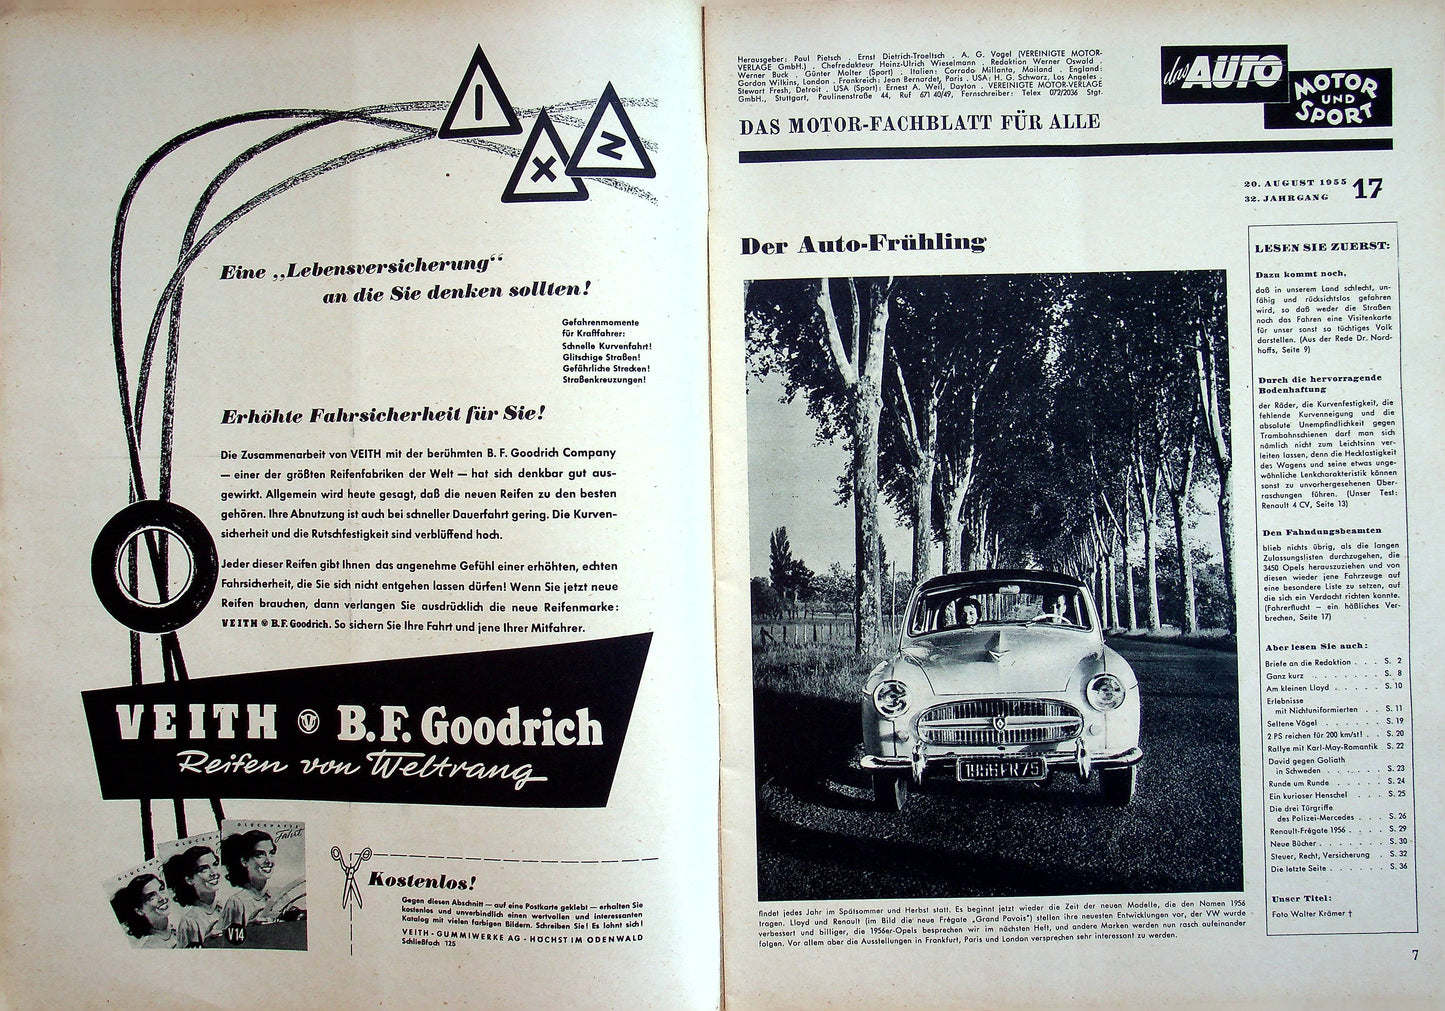 Auto Motor und Sport 17/1955